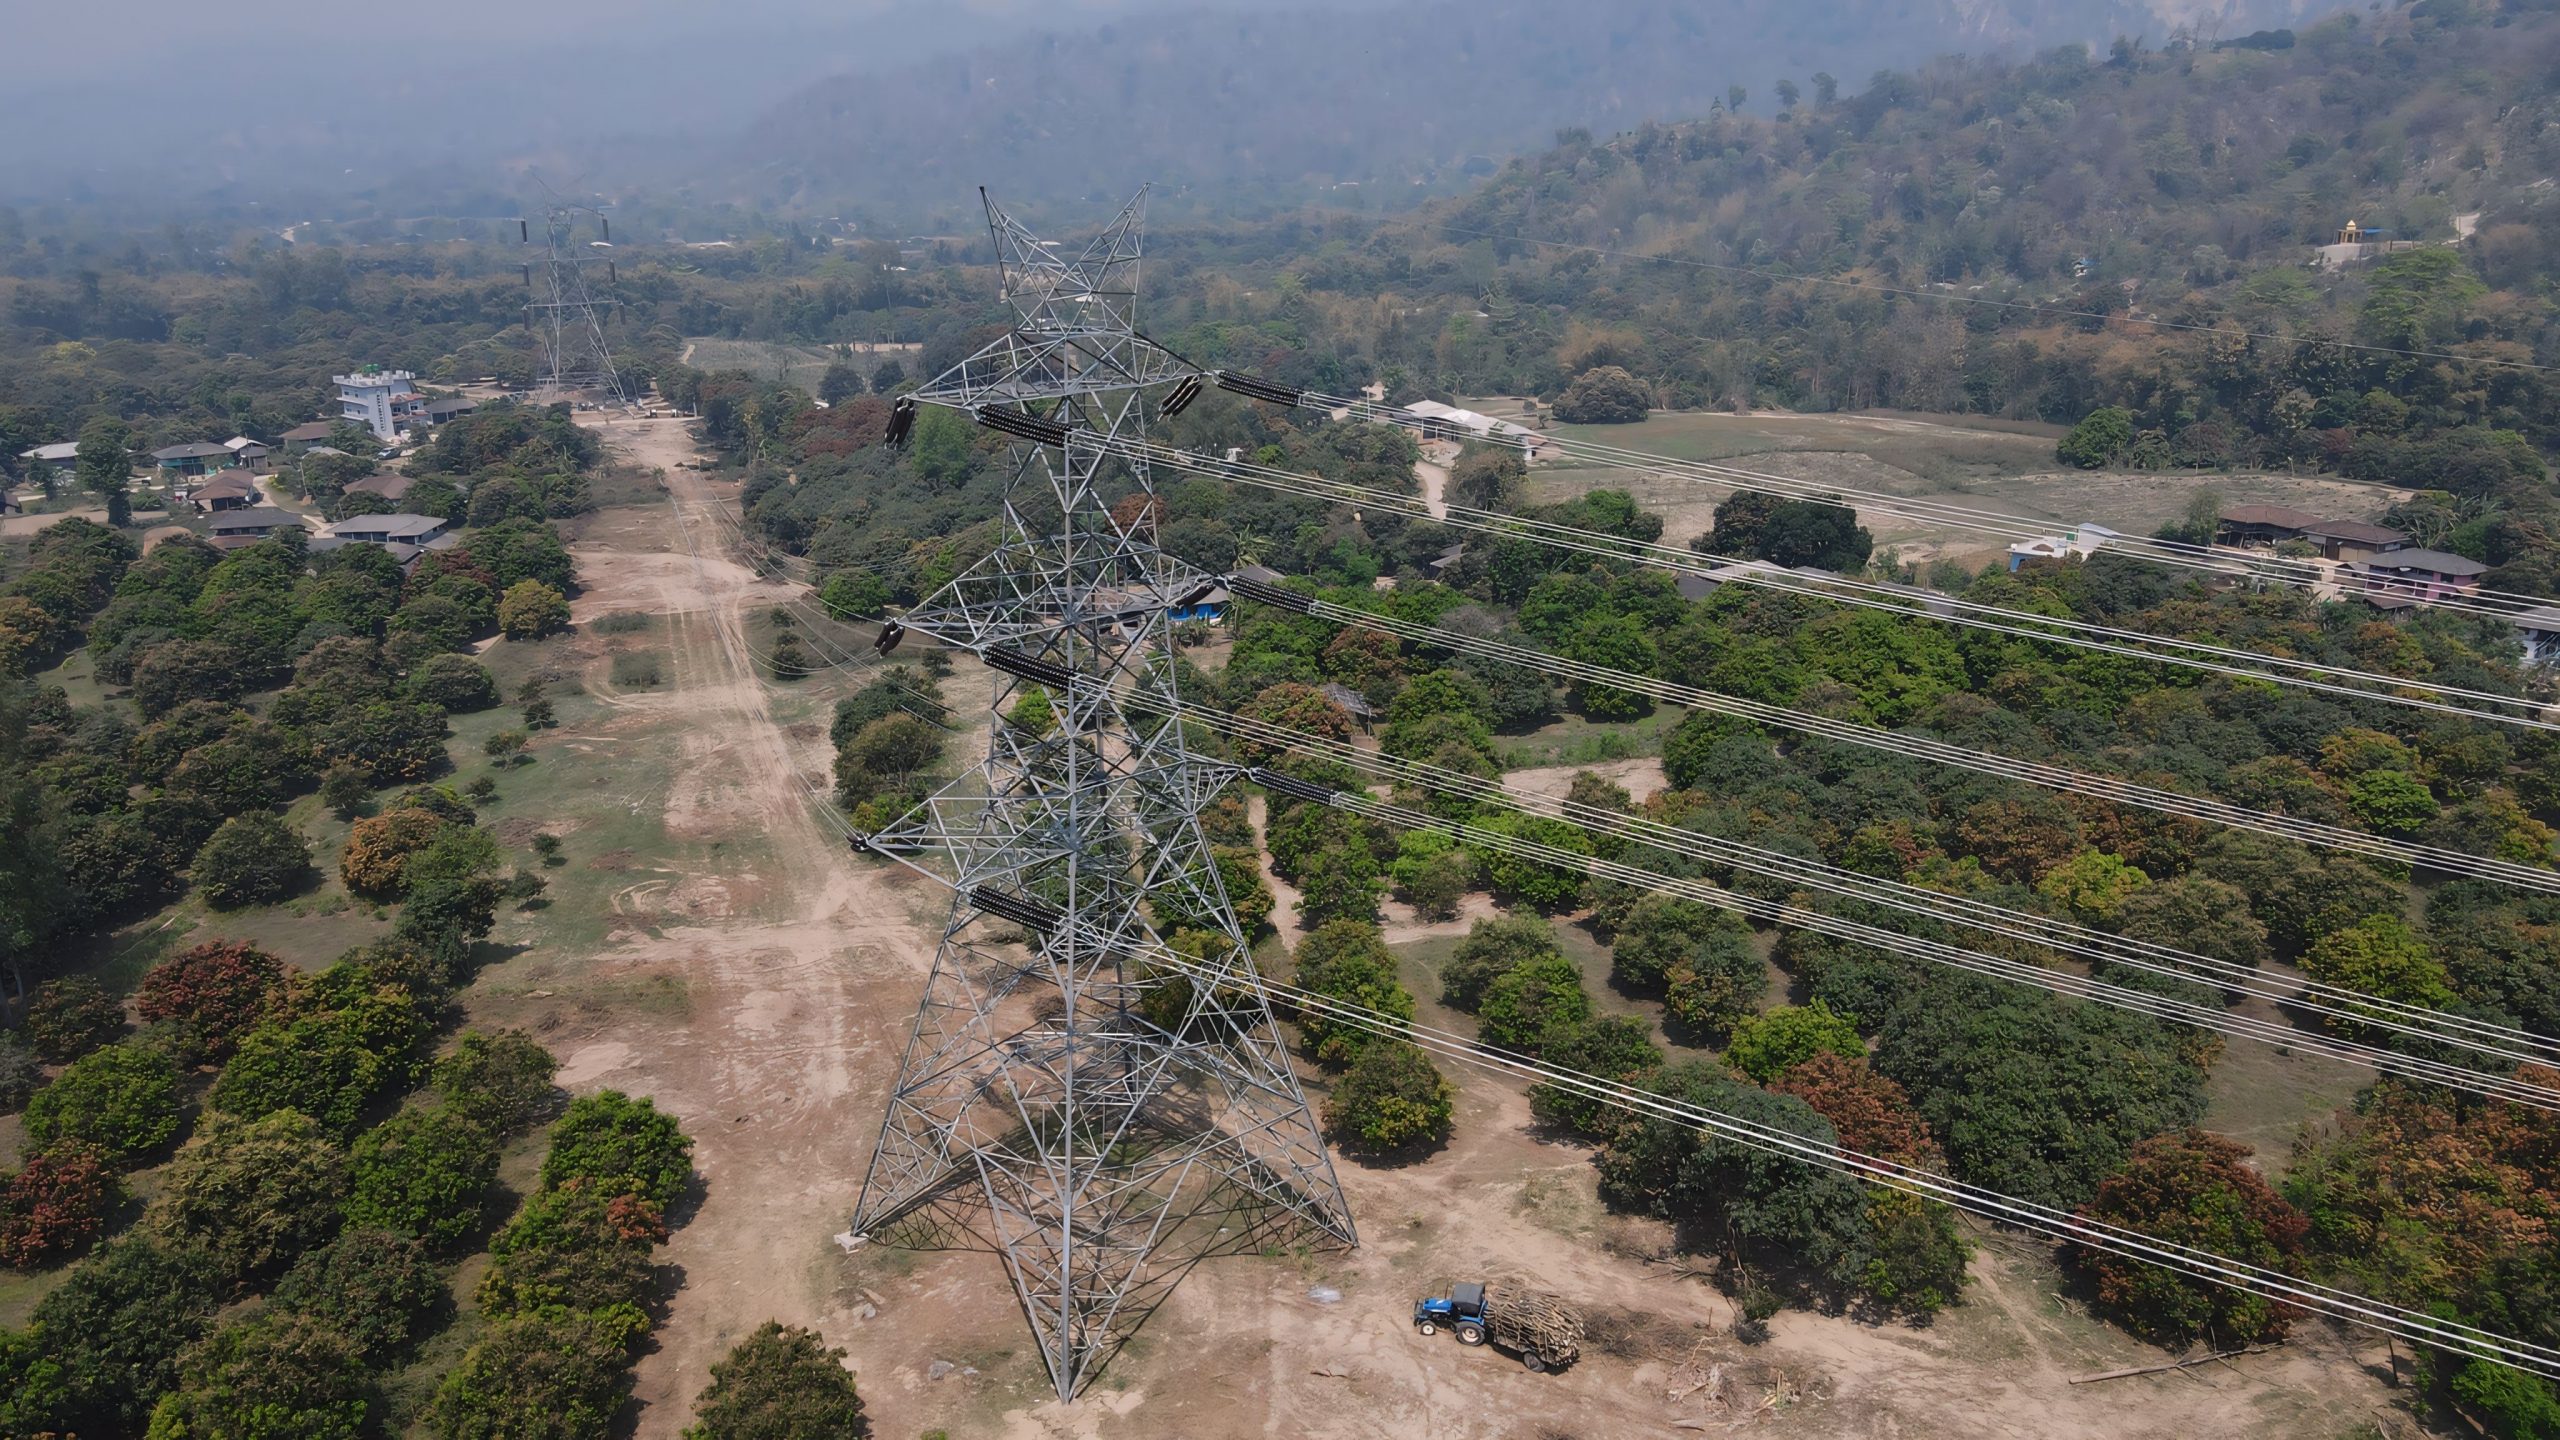 ढल्केबर–इनरुवा प्रसारण लाइन सञ्चालनमा, ४०० केभीबाट देशभित्र पहिलोपल्ट विद्युत प्रवाह सुरु